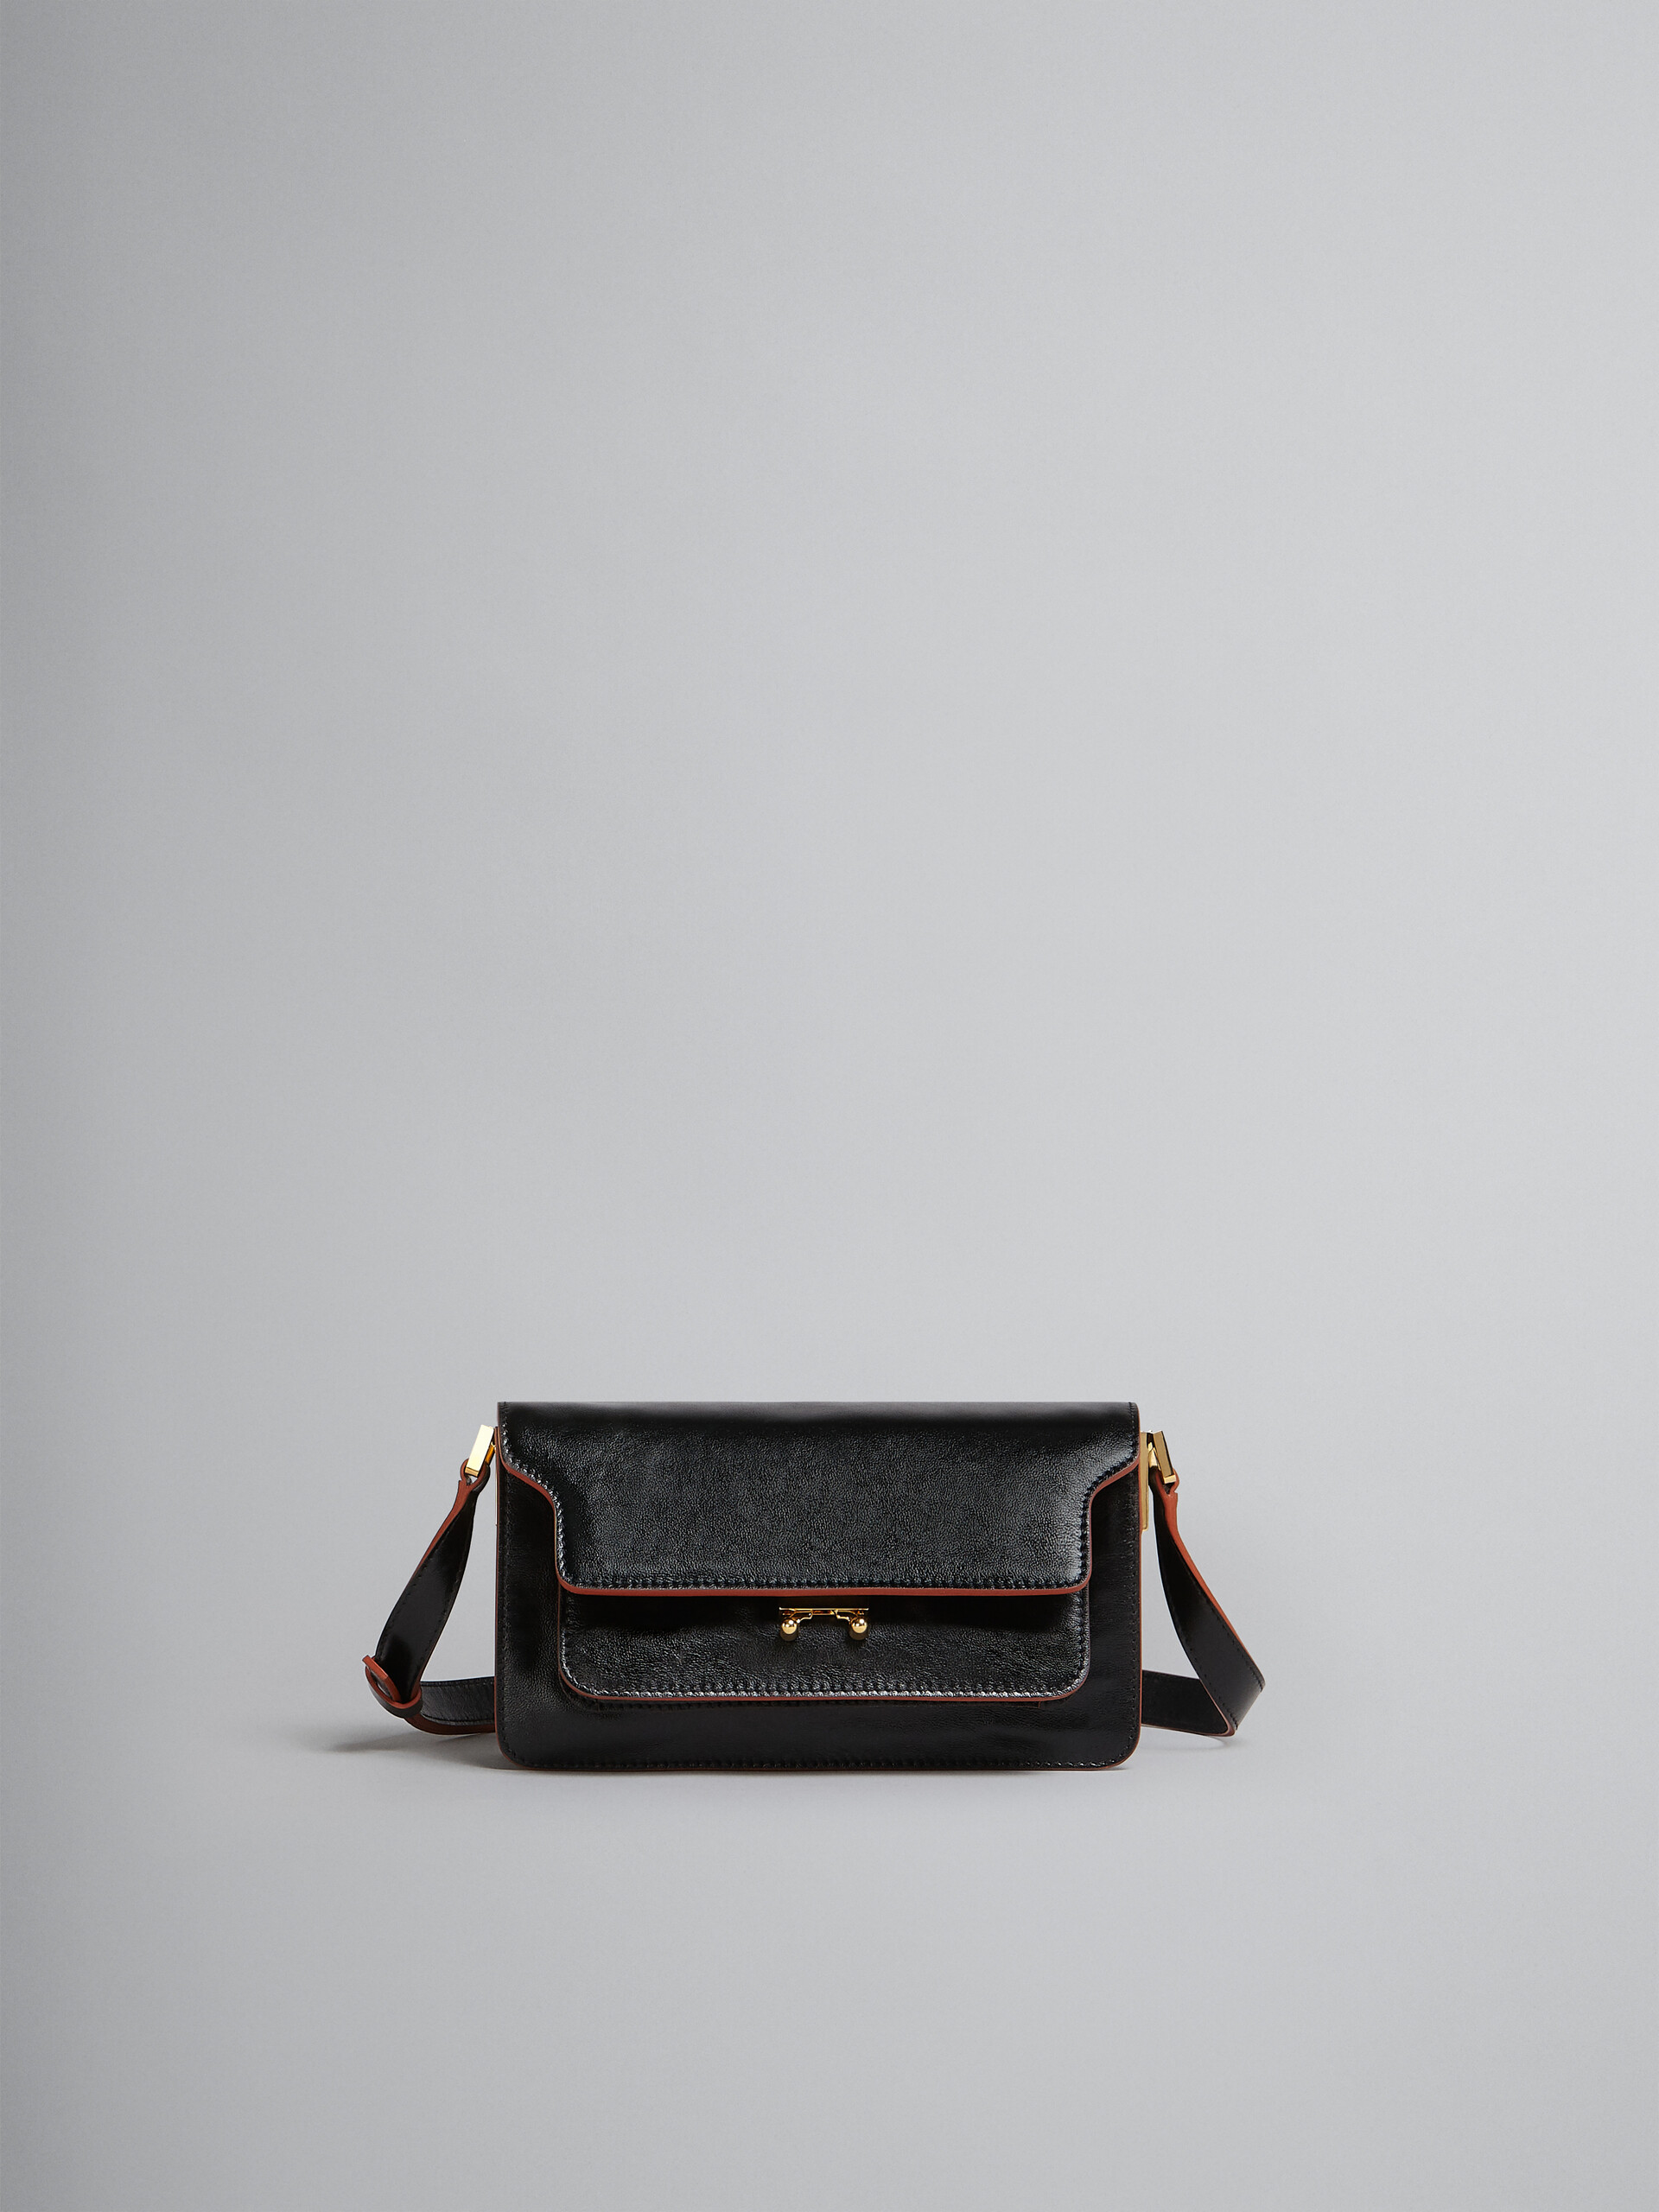 Trunk Soft Bag E/W in black leather - Shoulder Bag - Image 1